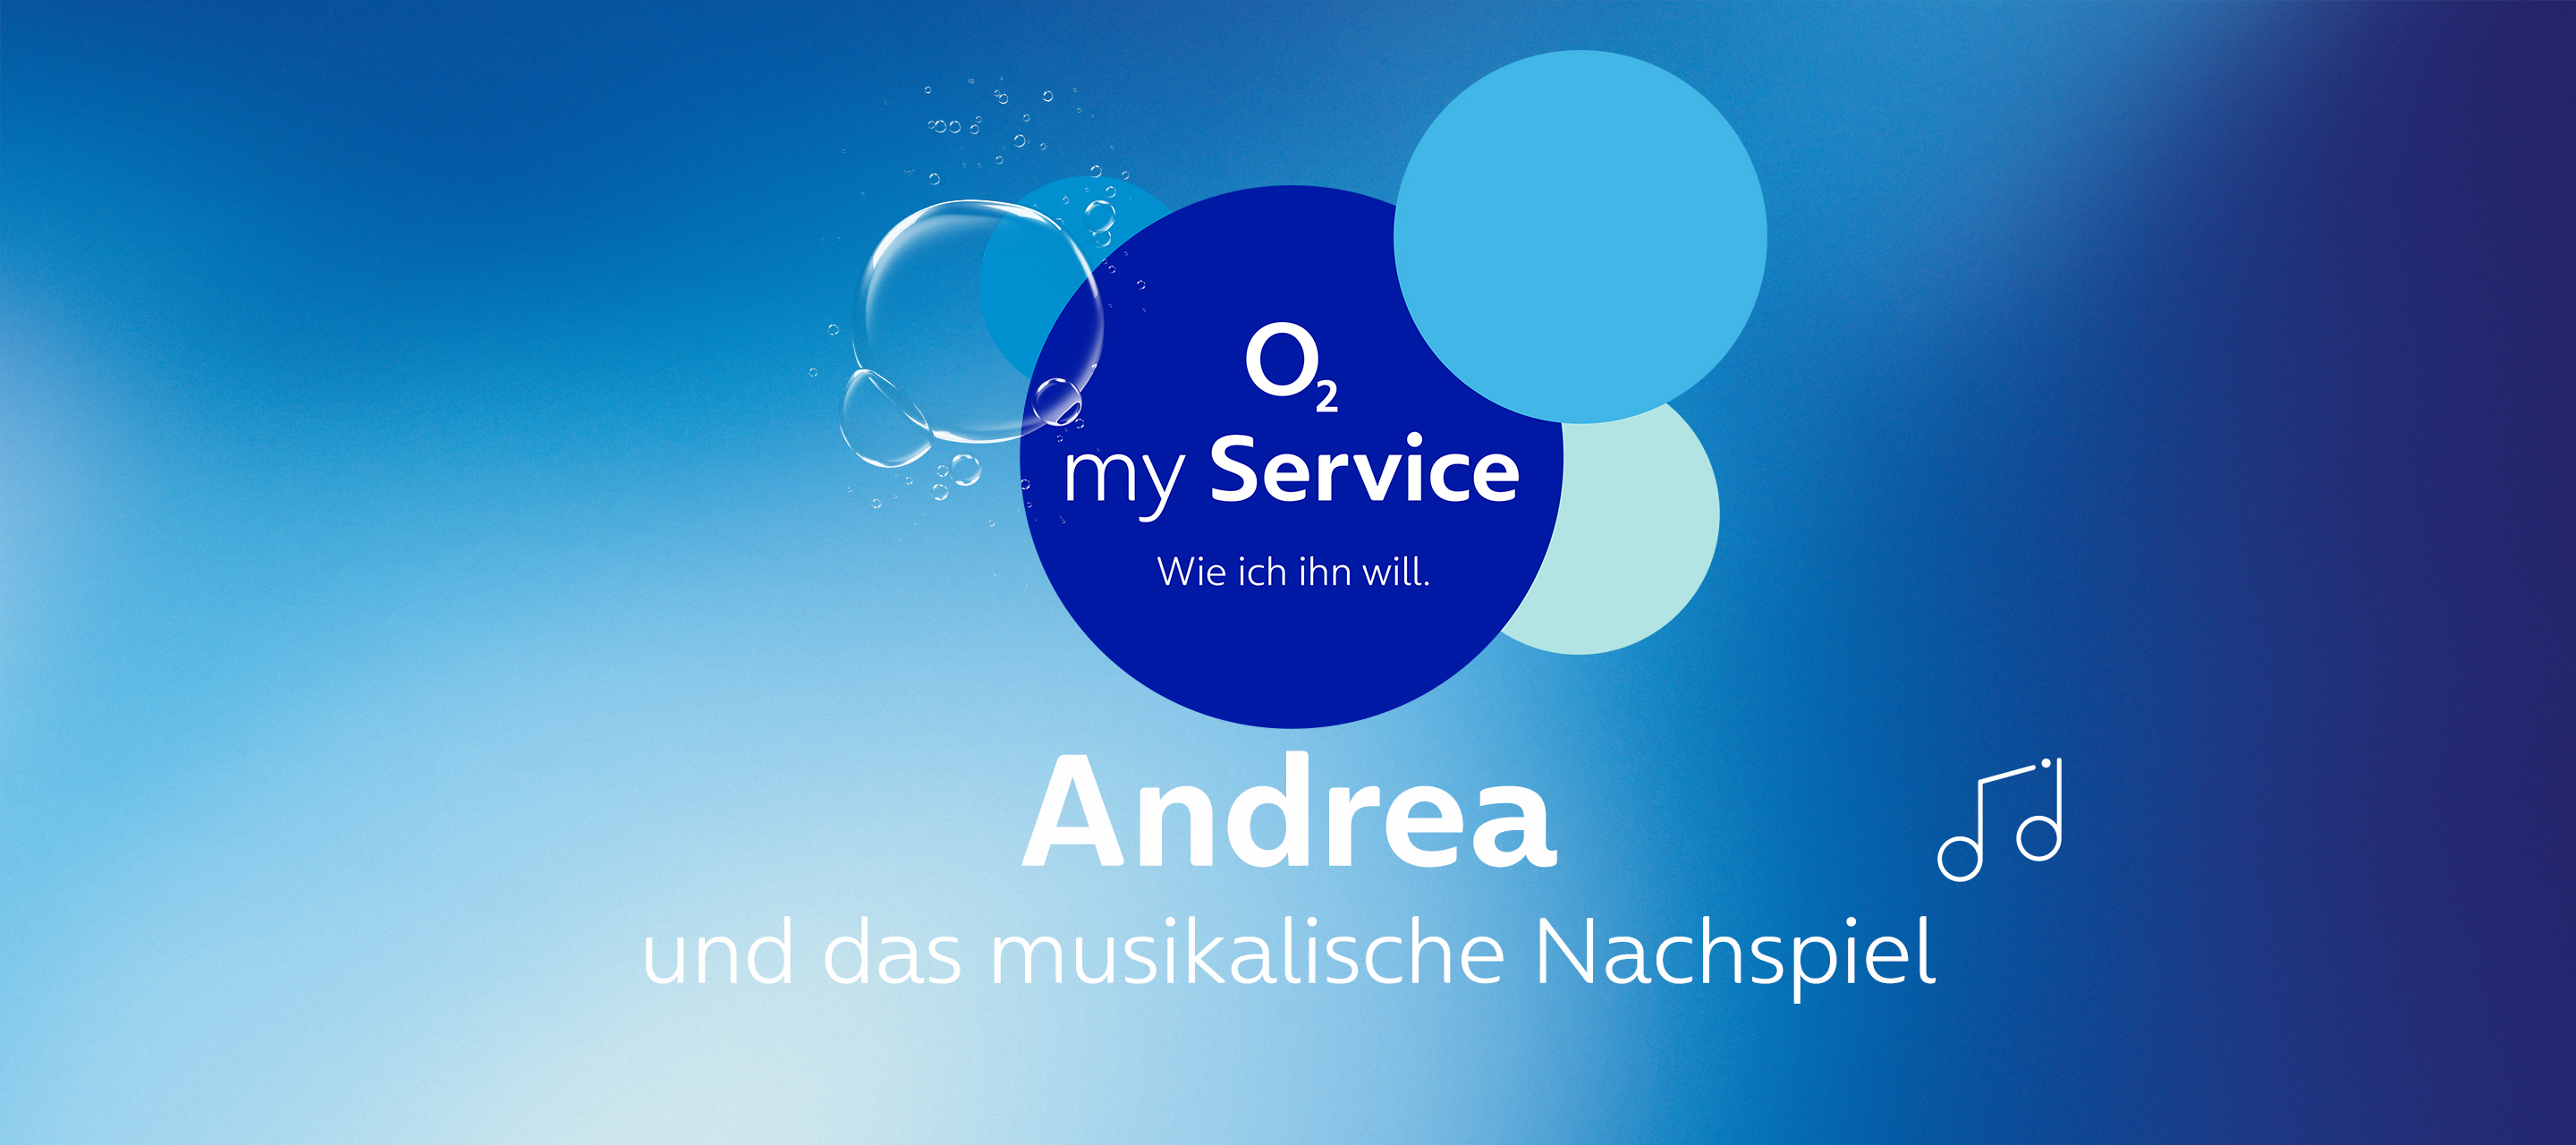 Die Gesichter hinter O₂ my Service – Andrea und das musikalische Nachspiel